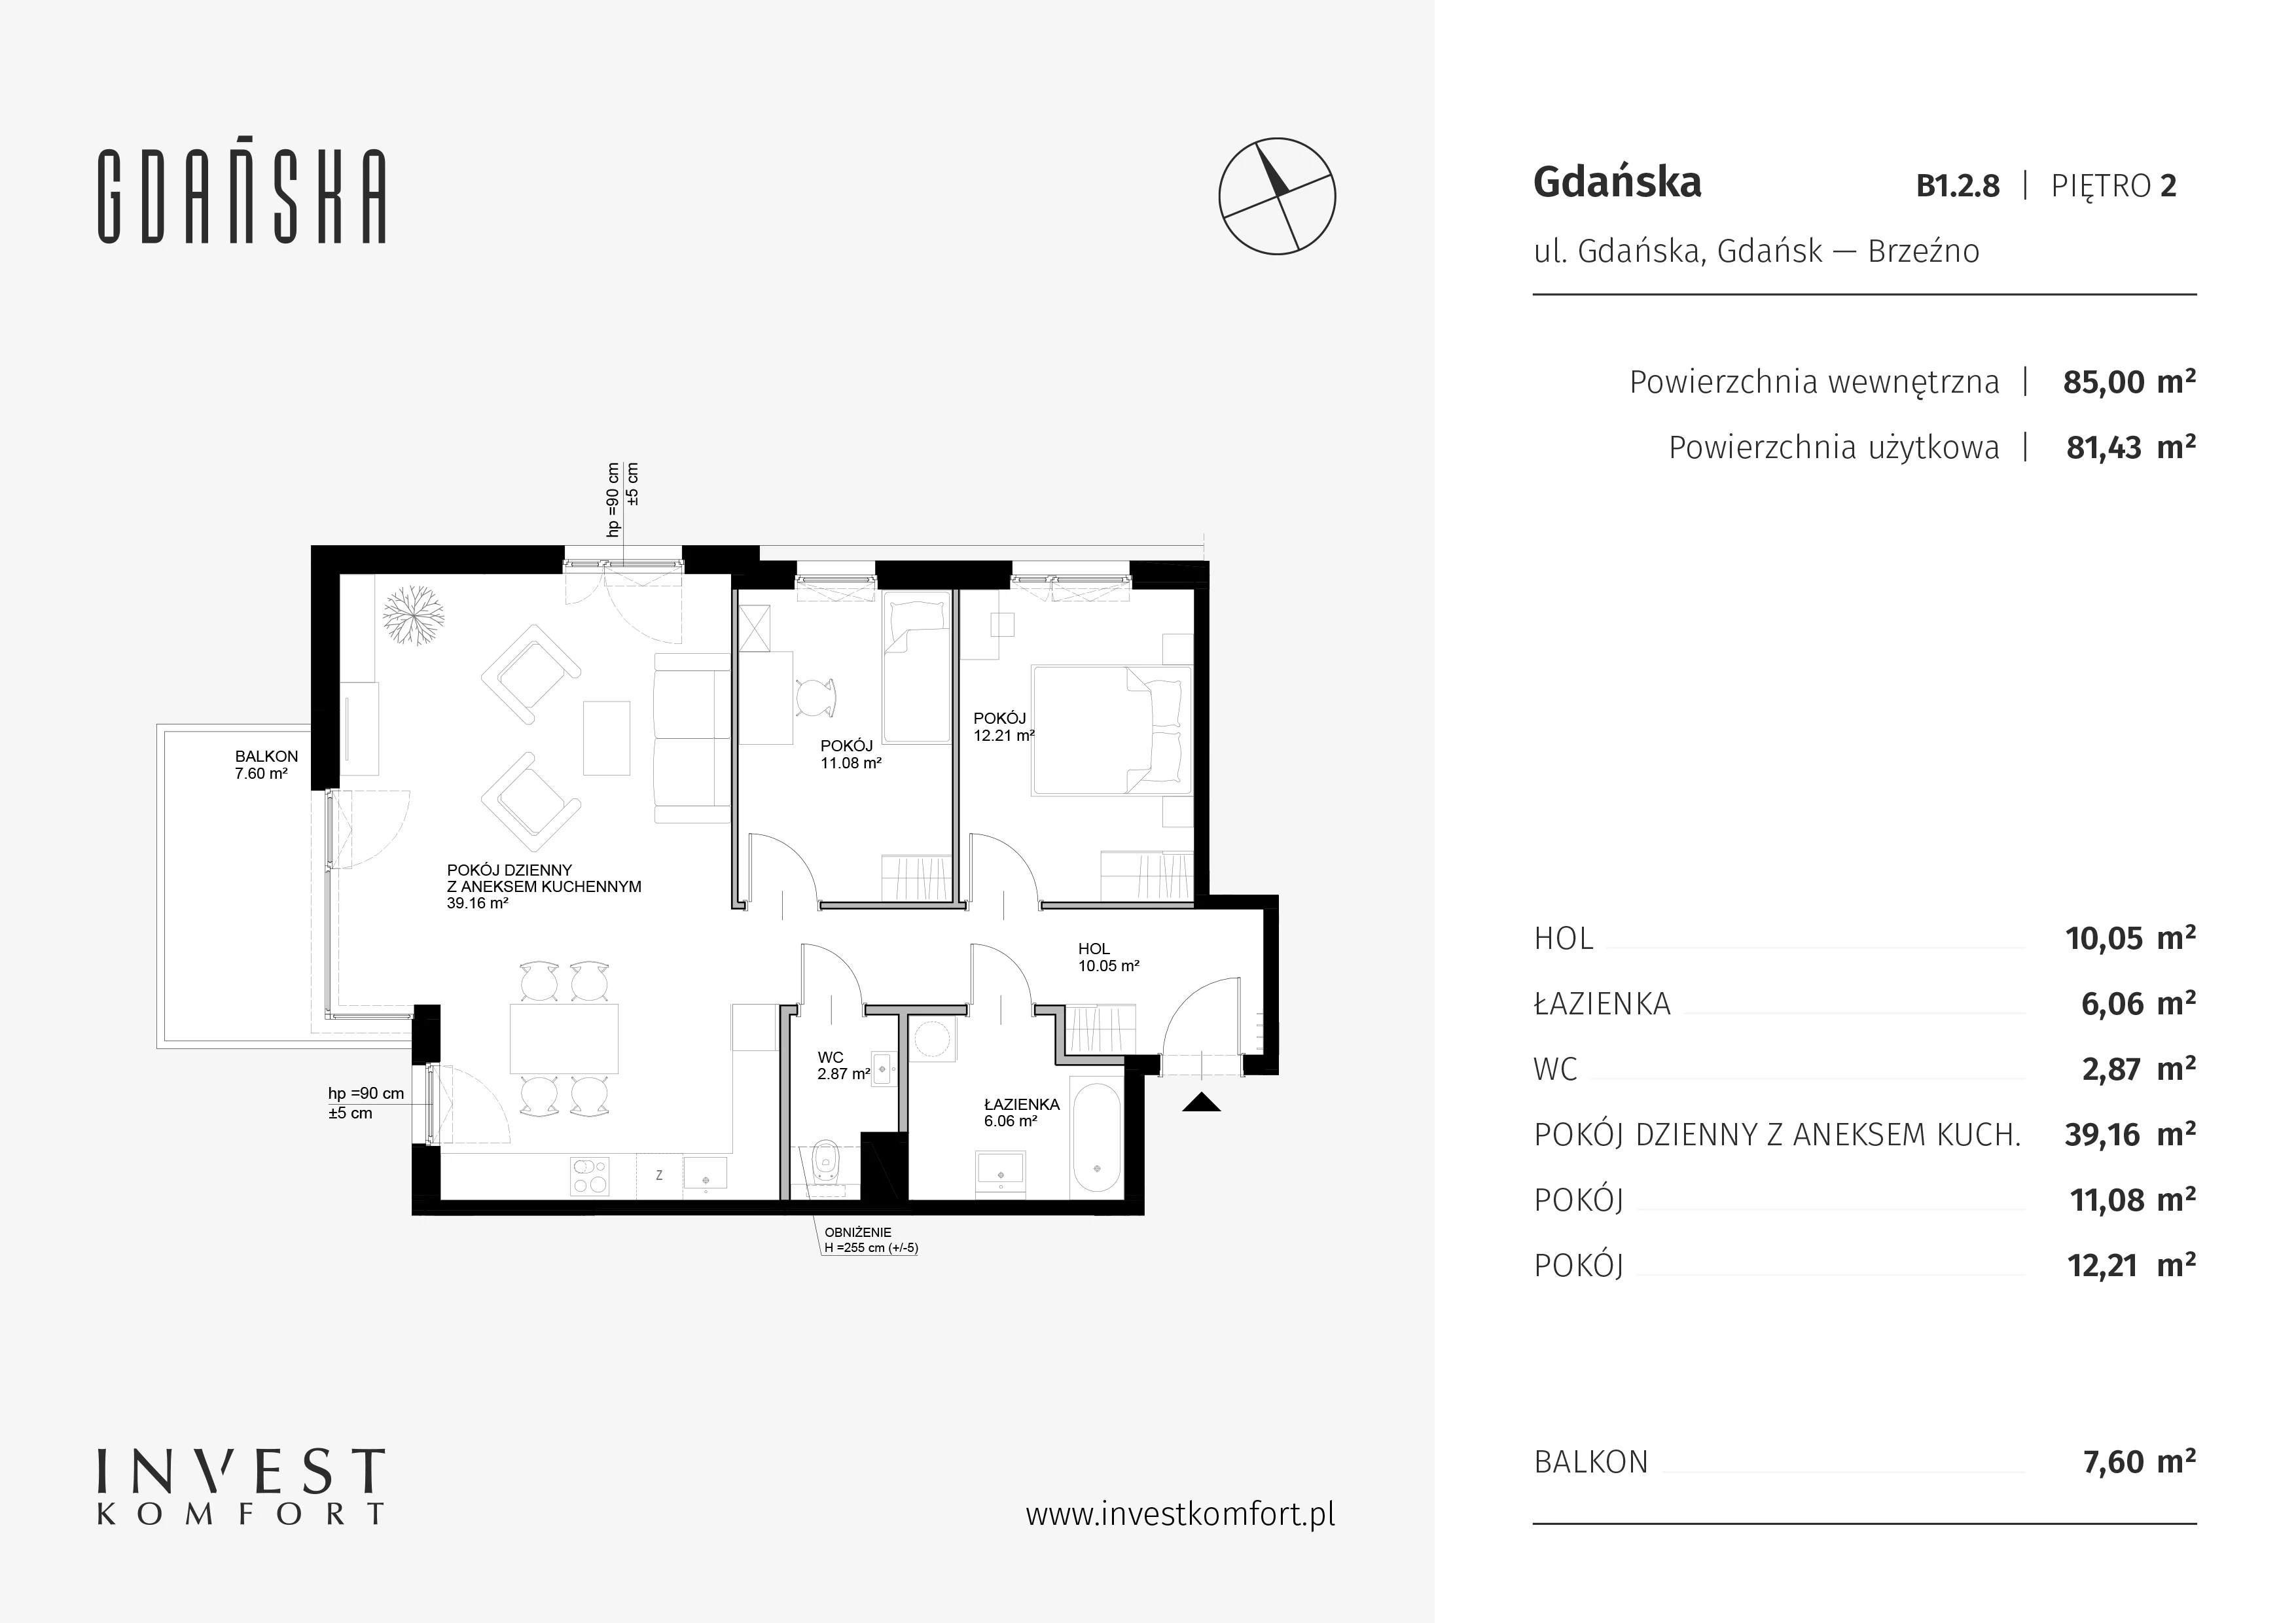 Mieszkanie 81,43 m², piętro 2, oferta nr B1.2.8, Gdańska, Gdańsk, Brzeźno, ul. Gdańska